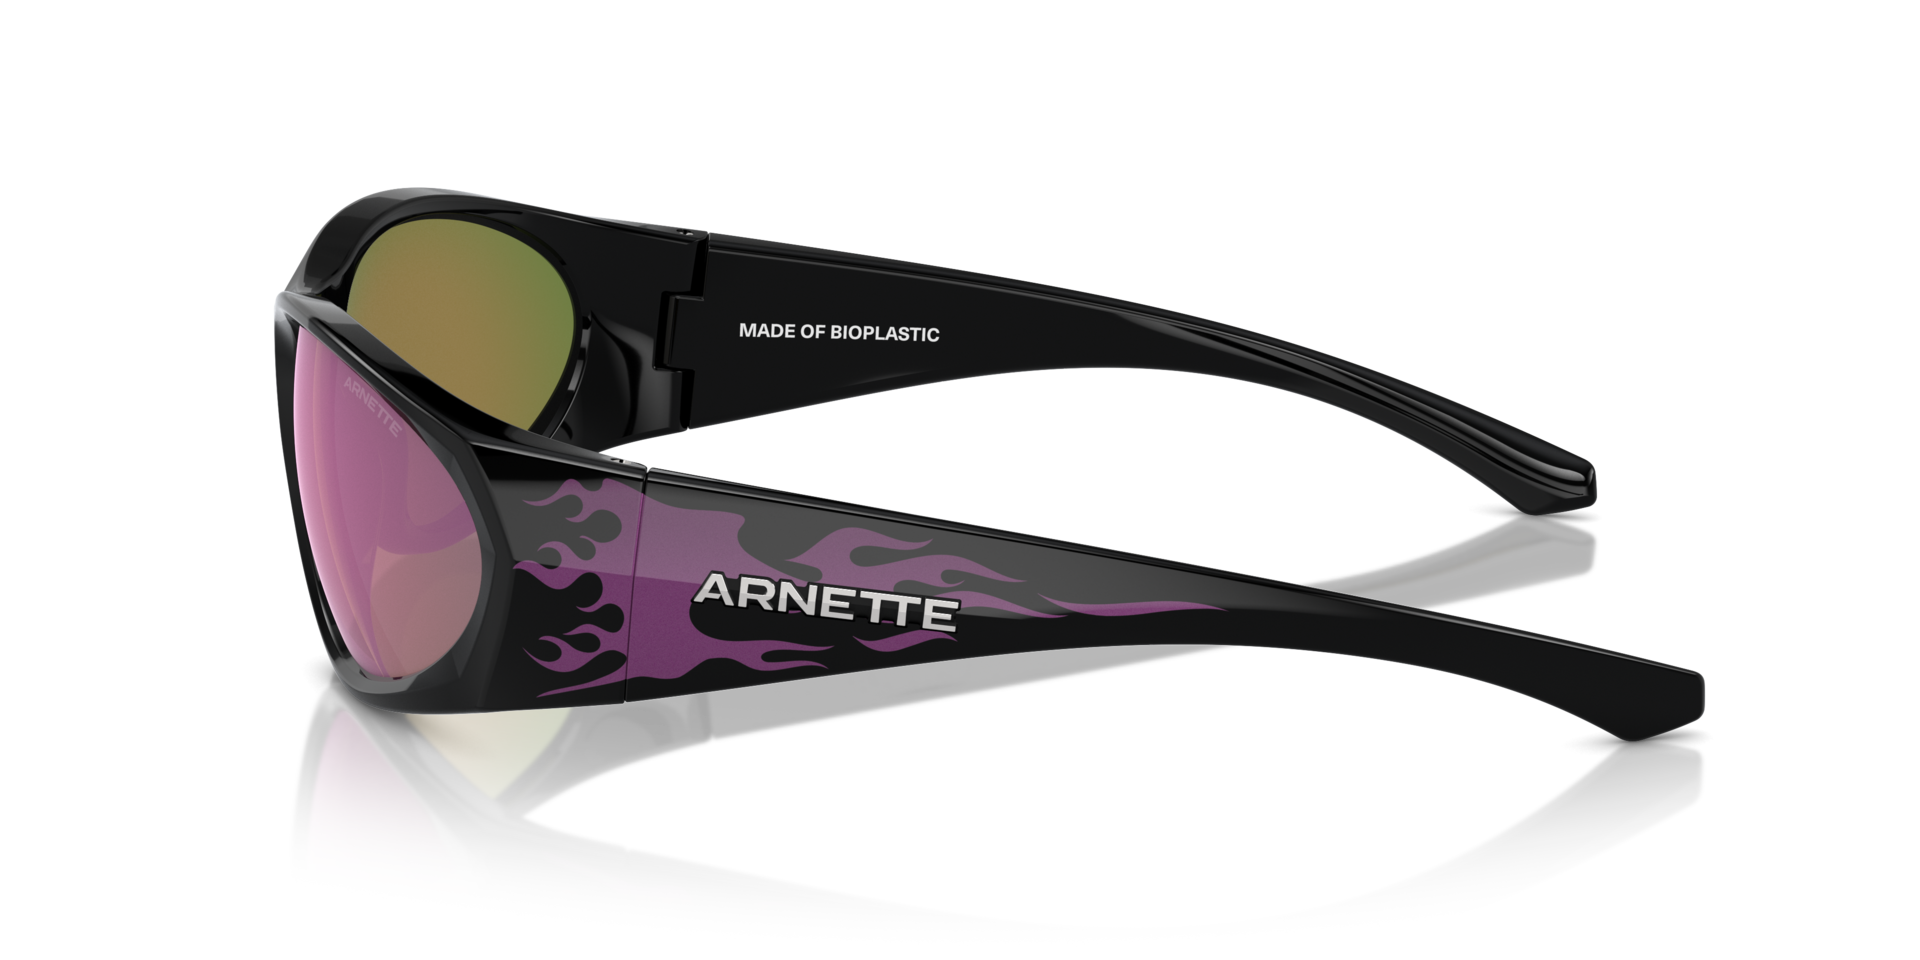 Das Bild zeigt die Sonnenbrille AN4342 29484X von der Marke Arnette in schwarz.